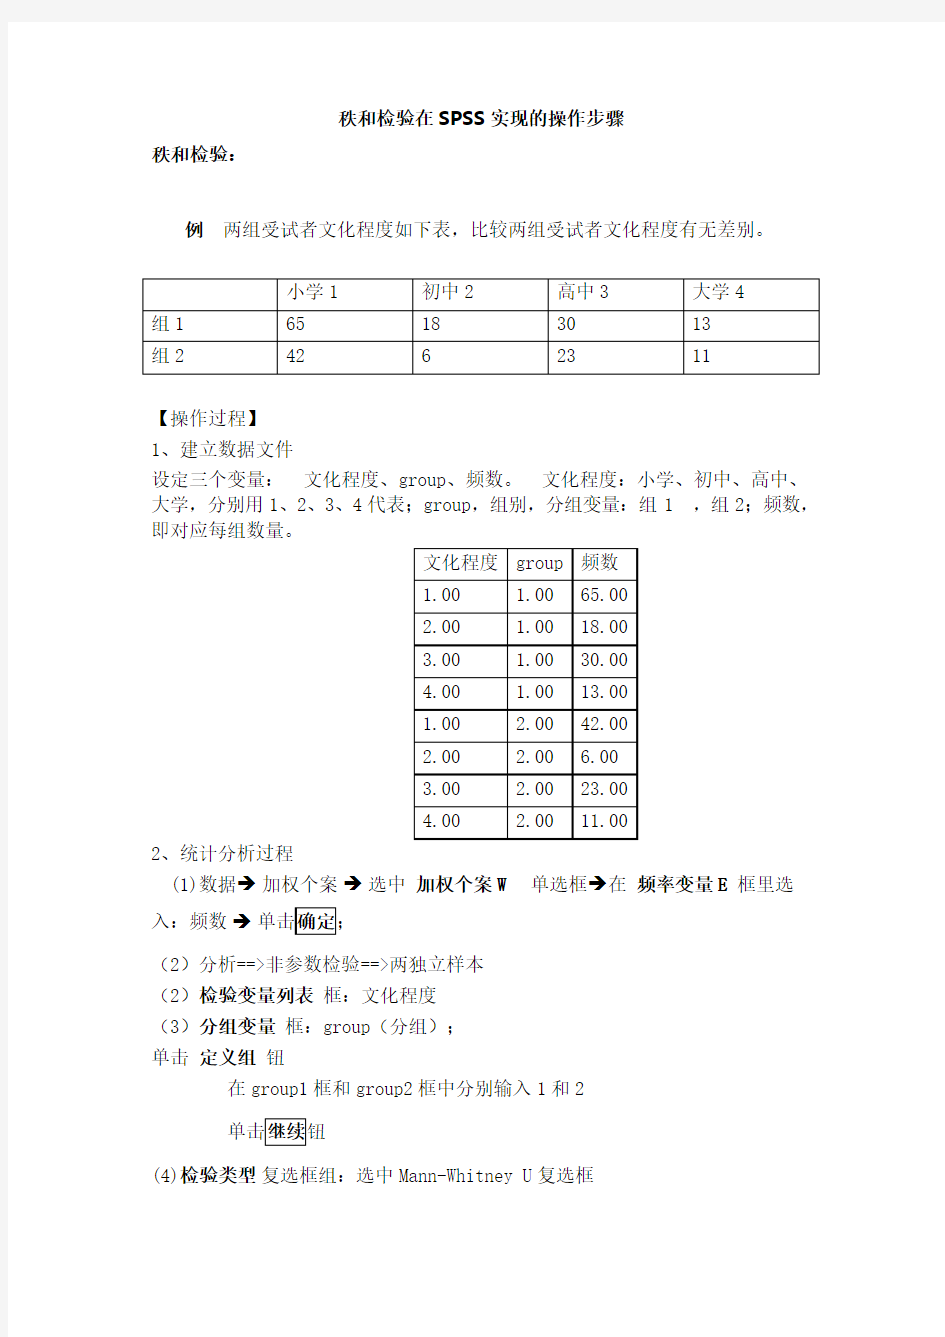 (完整版)秩和检验SPSS中文版